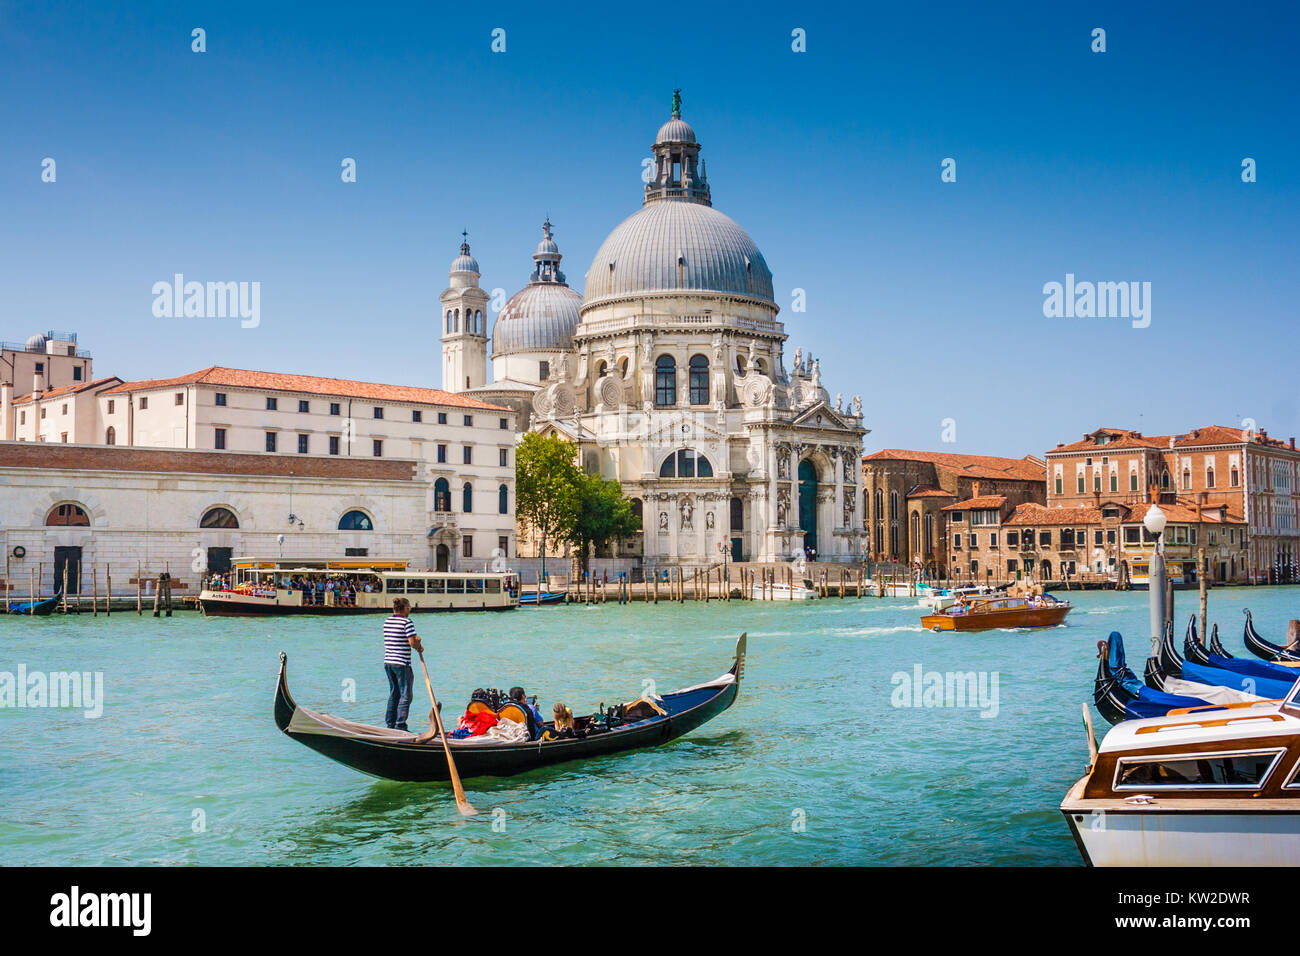 Tradizionale Gondola sul Canal Grande con la Basilica di Santa Maria della Salute in background, Venezia, Italia Foto Stock